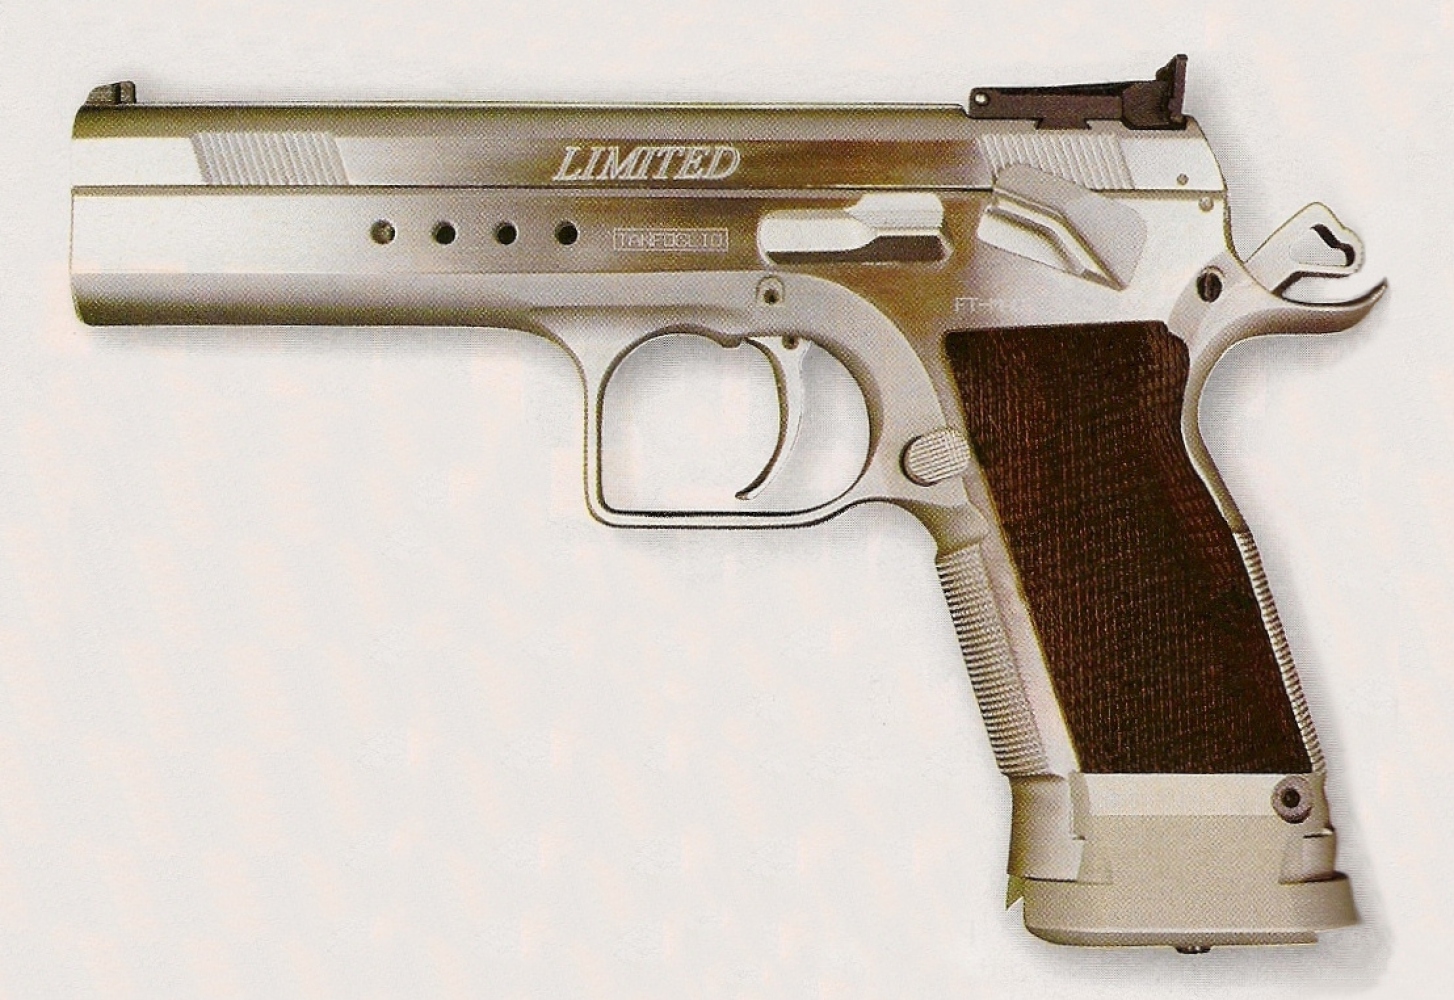 Bien conçu et bénéficiant d’une très bonne prise en mains, le pistolet Tanfoglio offre un usage polyvalent pouvant convenir à toutes les formes de tir.